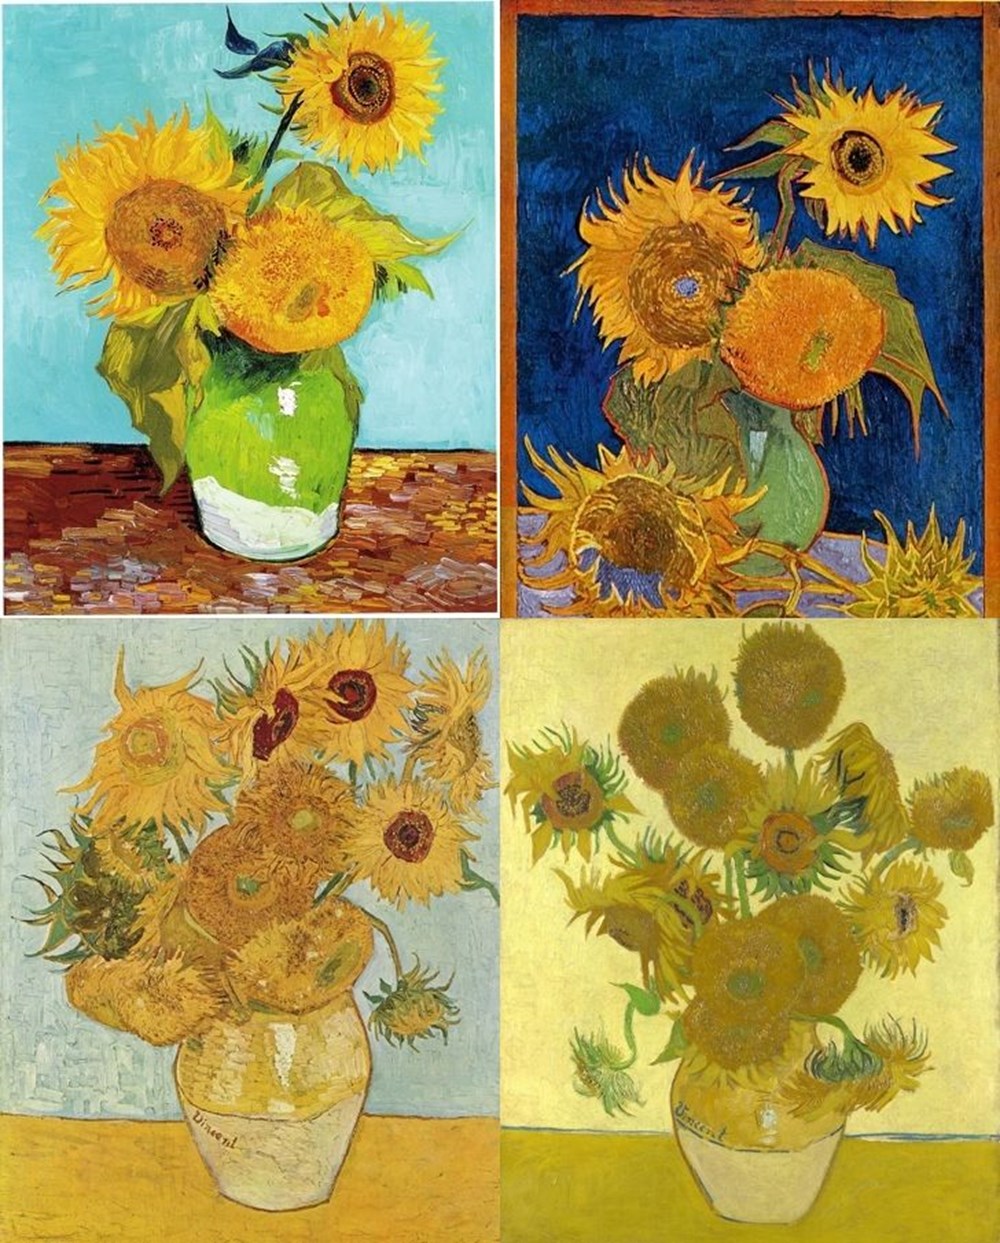 Ressam Vincent Van Gogh kulağını neden kesti? Van Gogh
şizofren mi dahi miydi? - 9